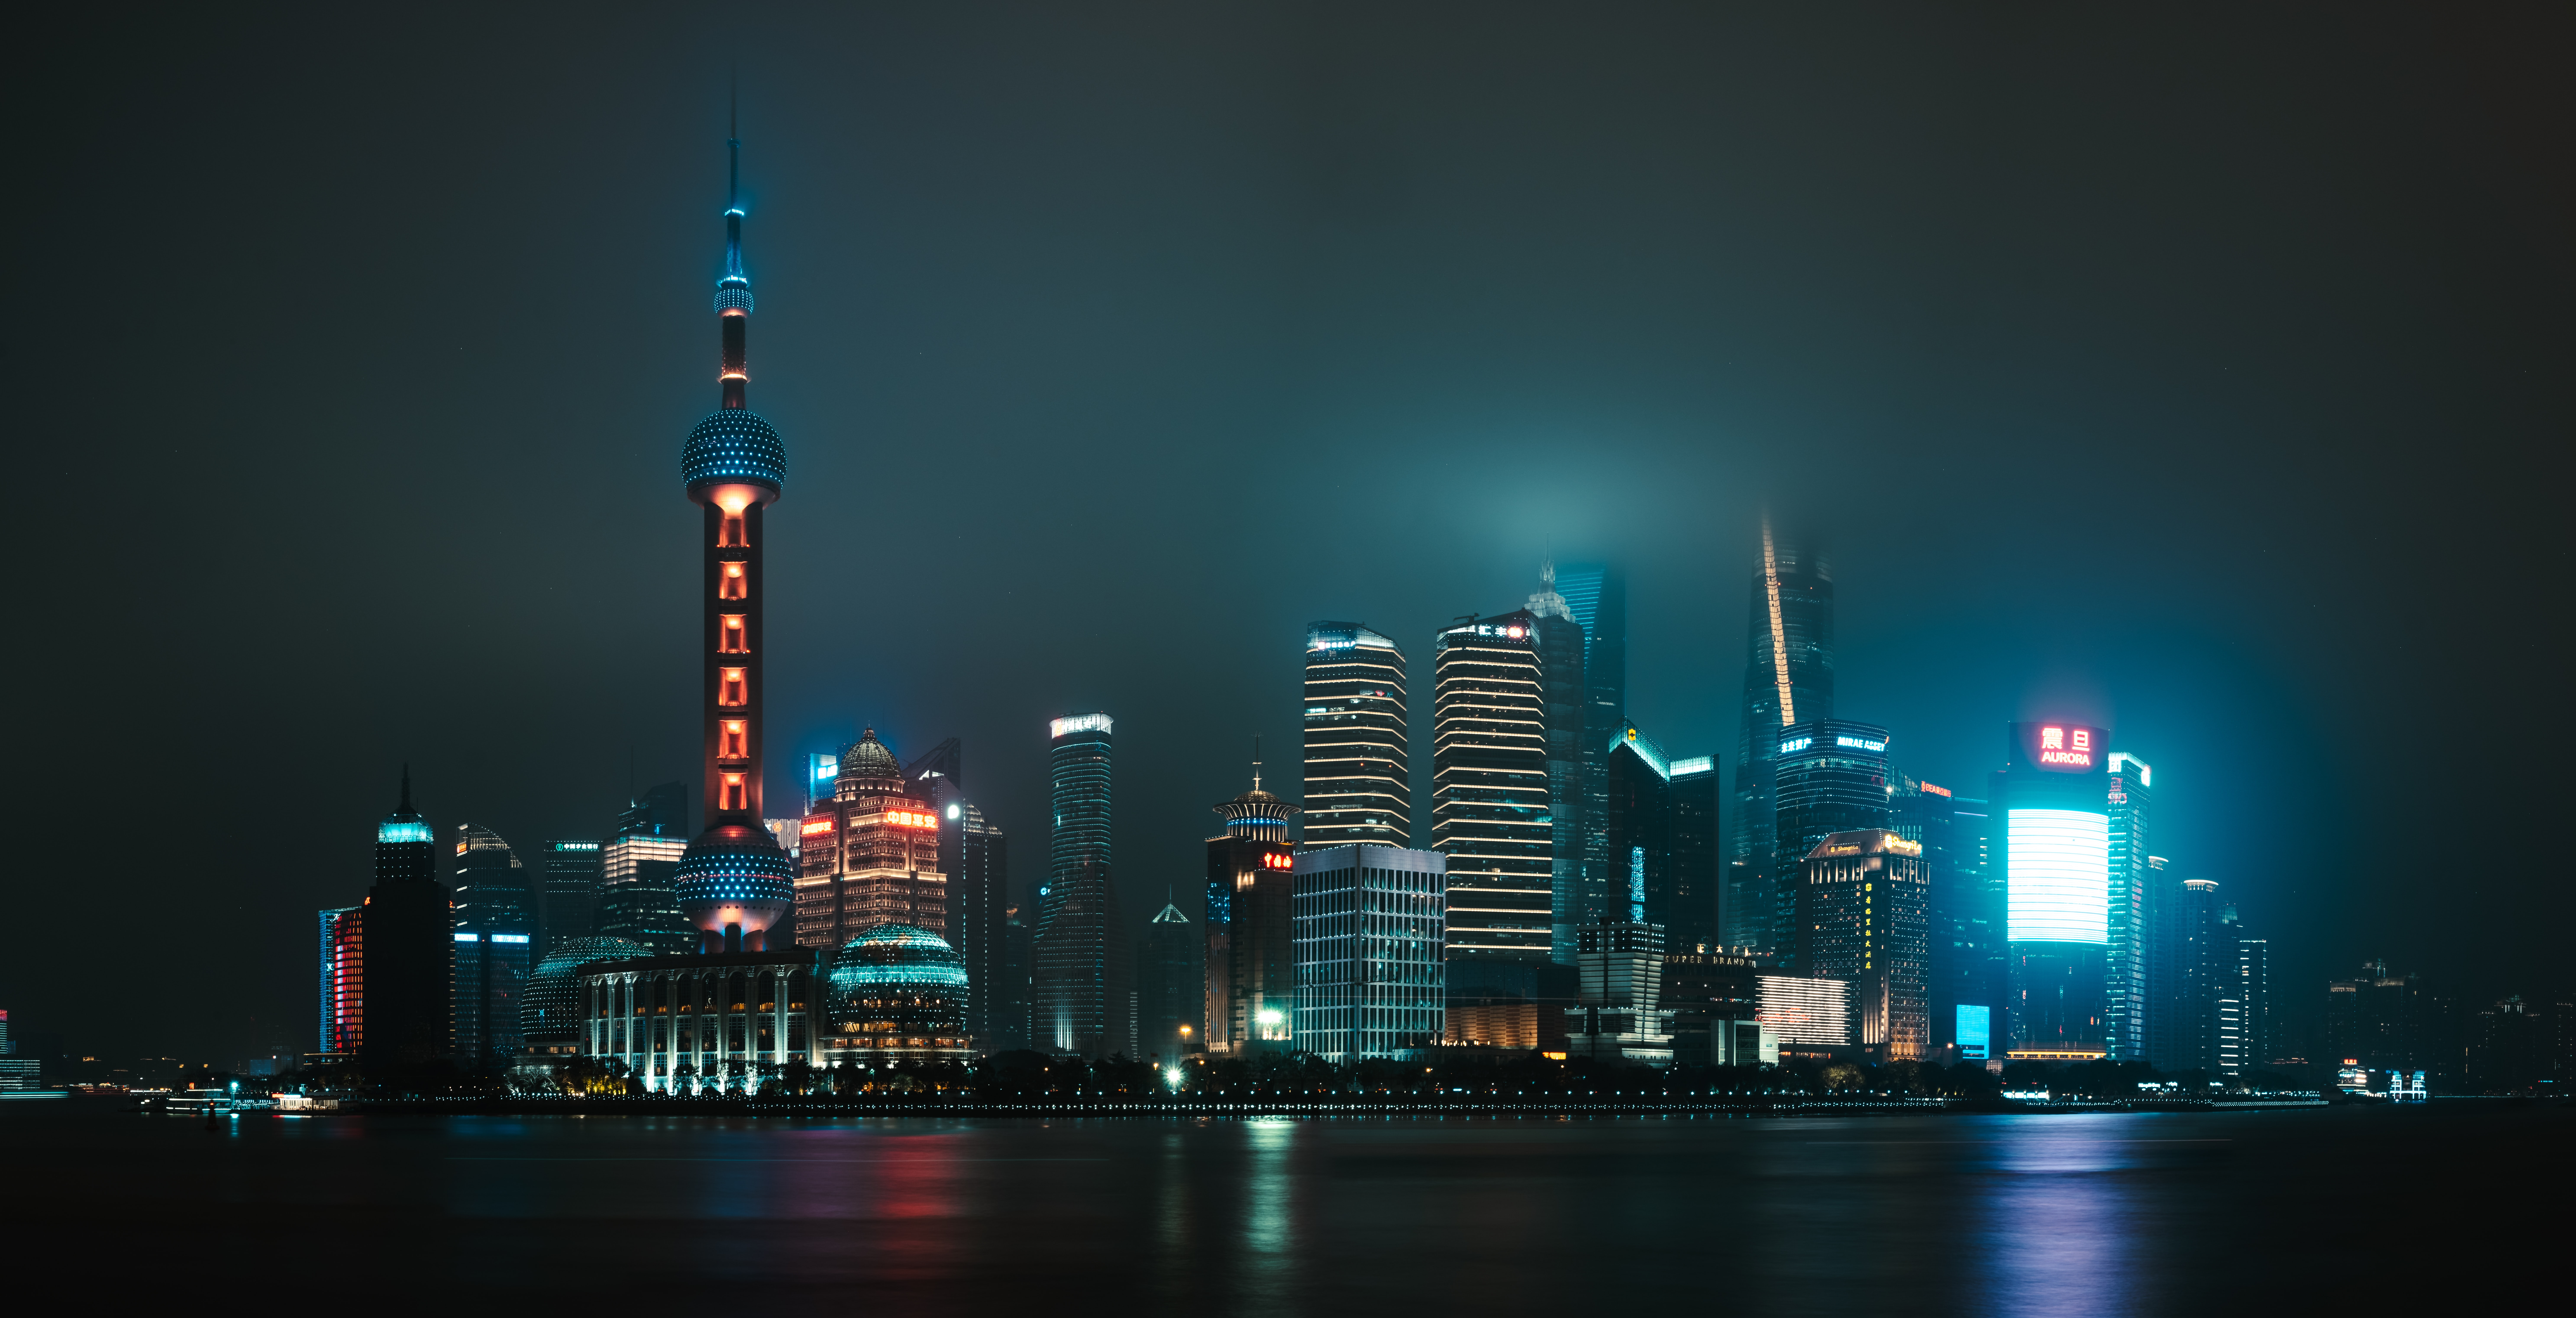 Shanghai 8k Ultra HD Wallpaper by Andrea Leopardi